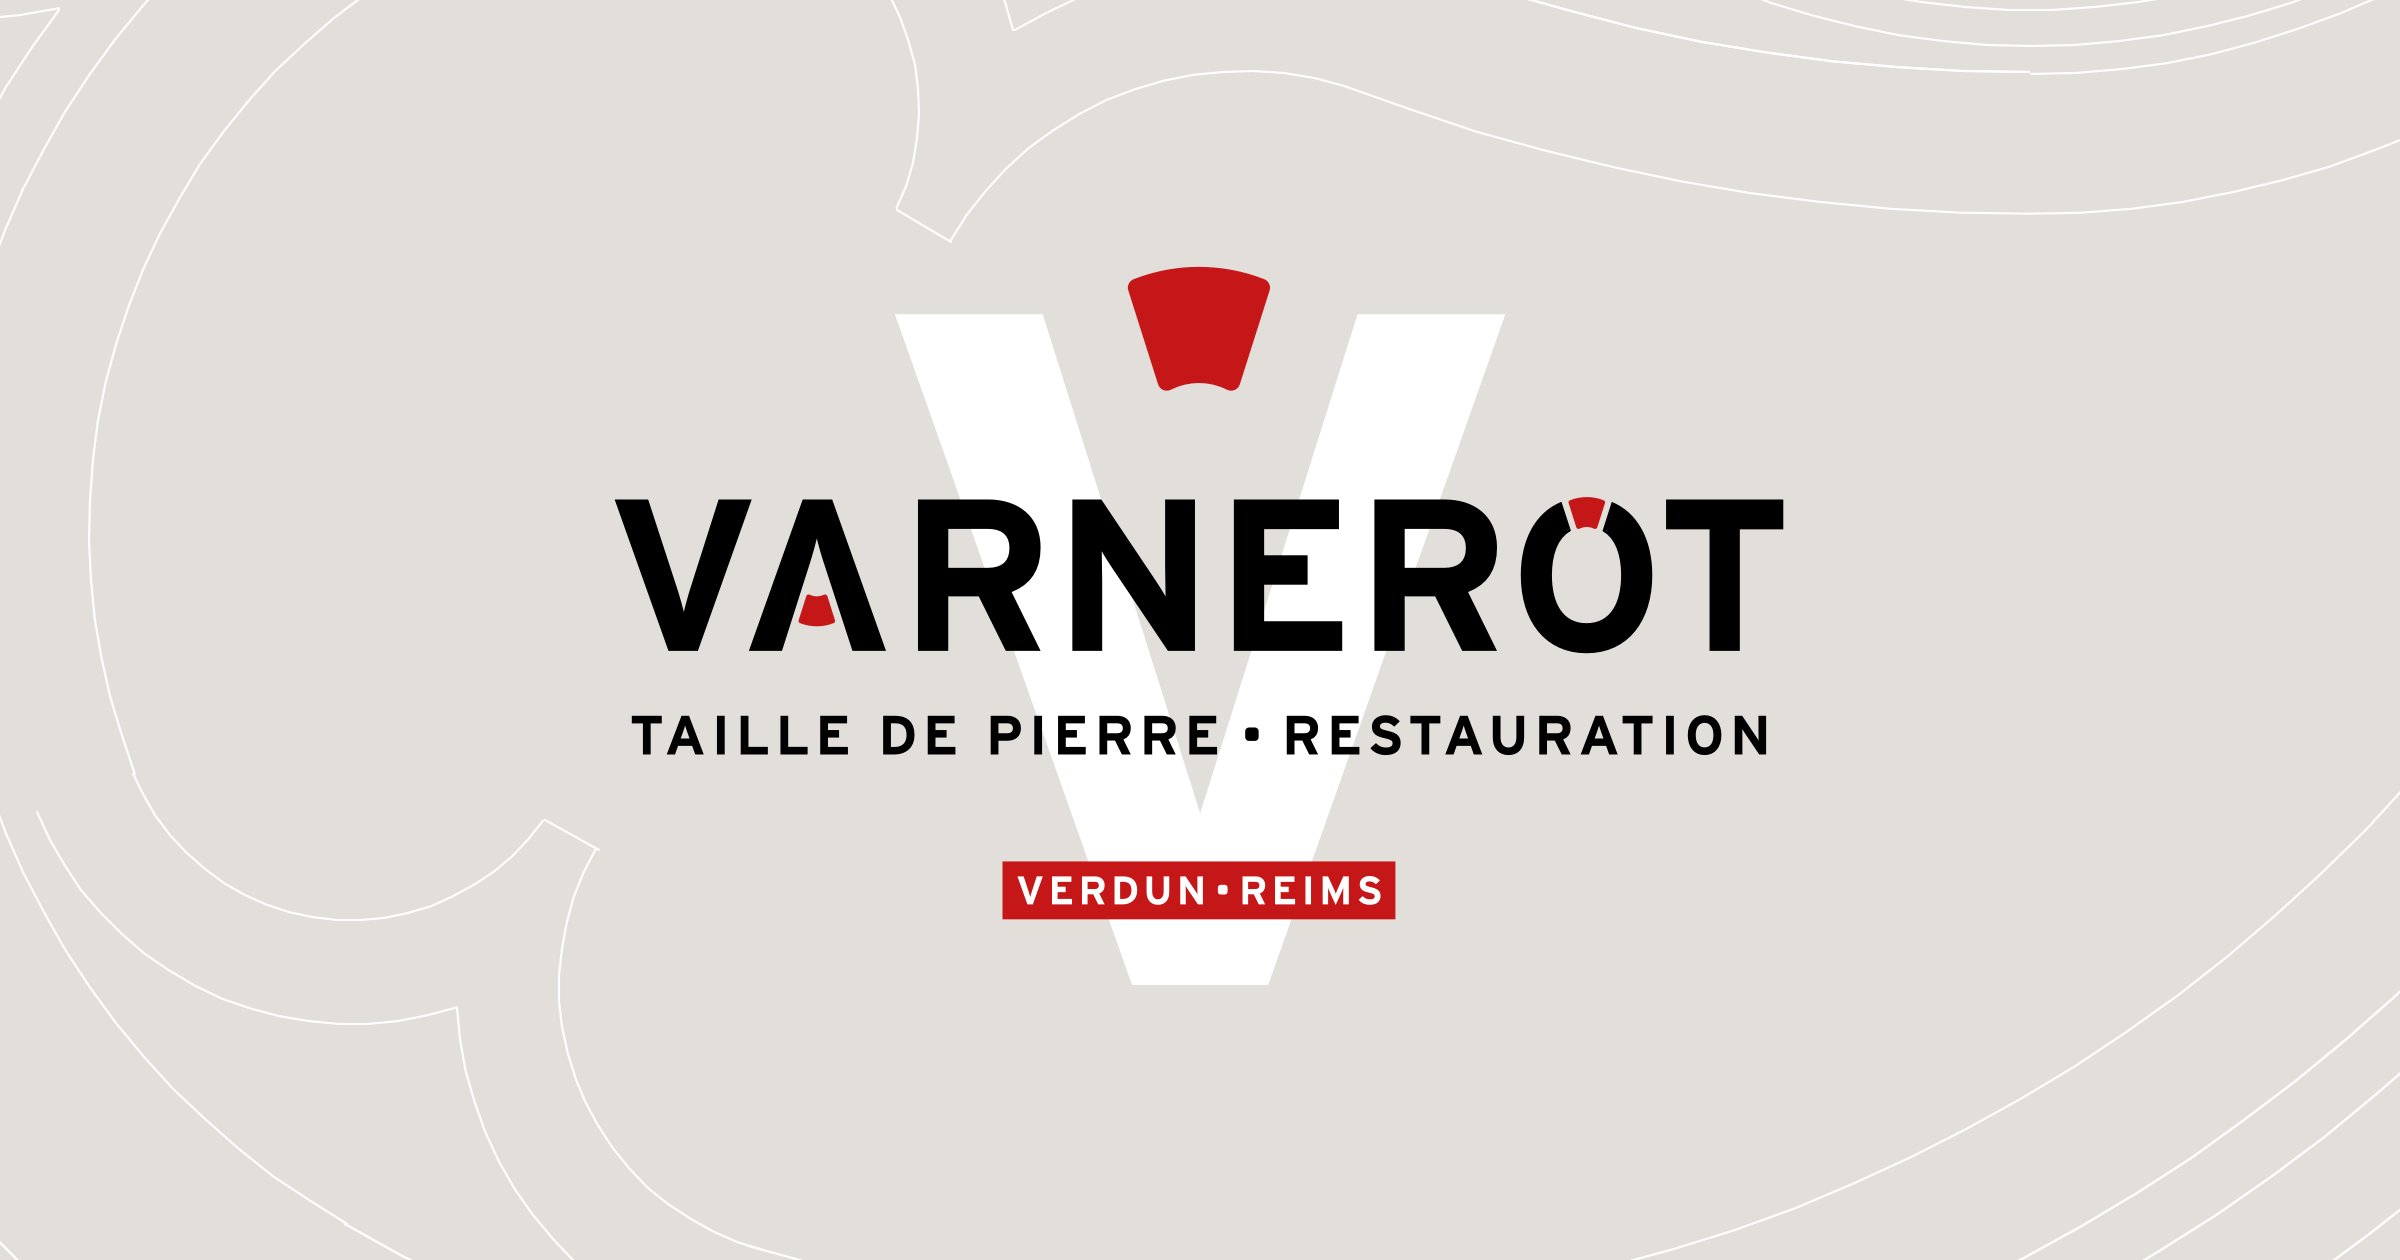 Varnerot - Entreprise spécialisée en taille de pierre, restauration et maçonnerie traditionnelle.